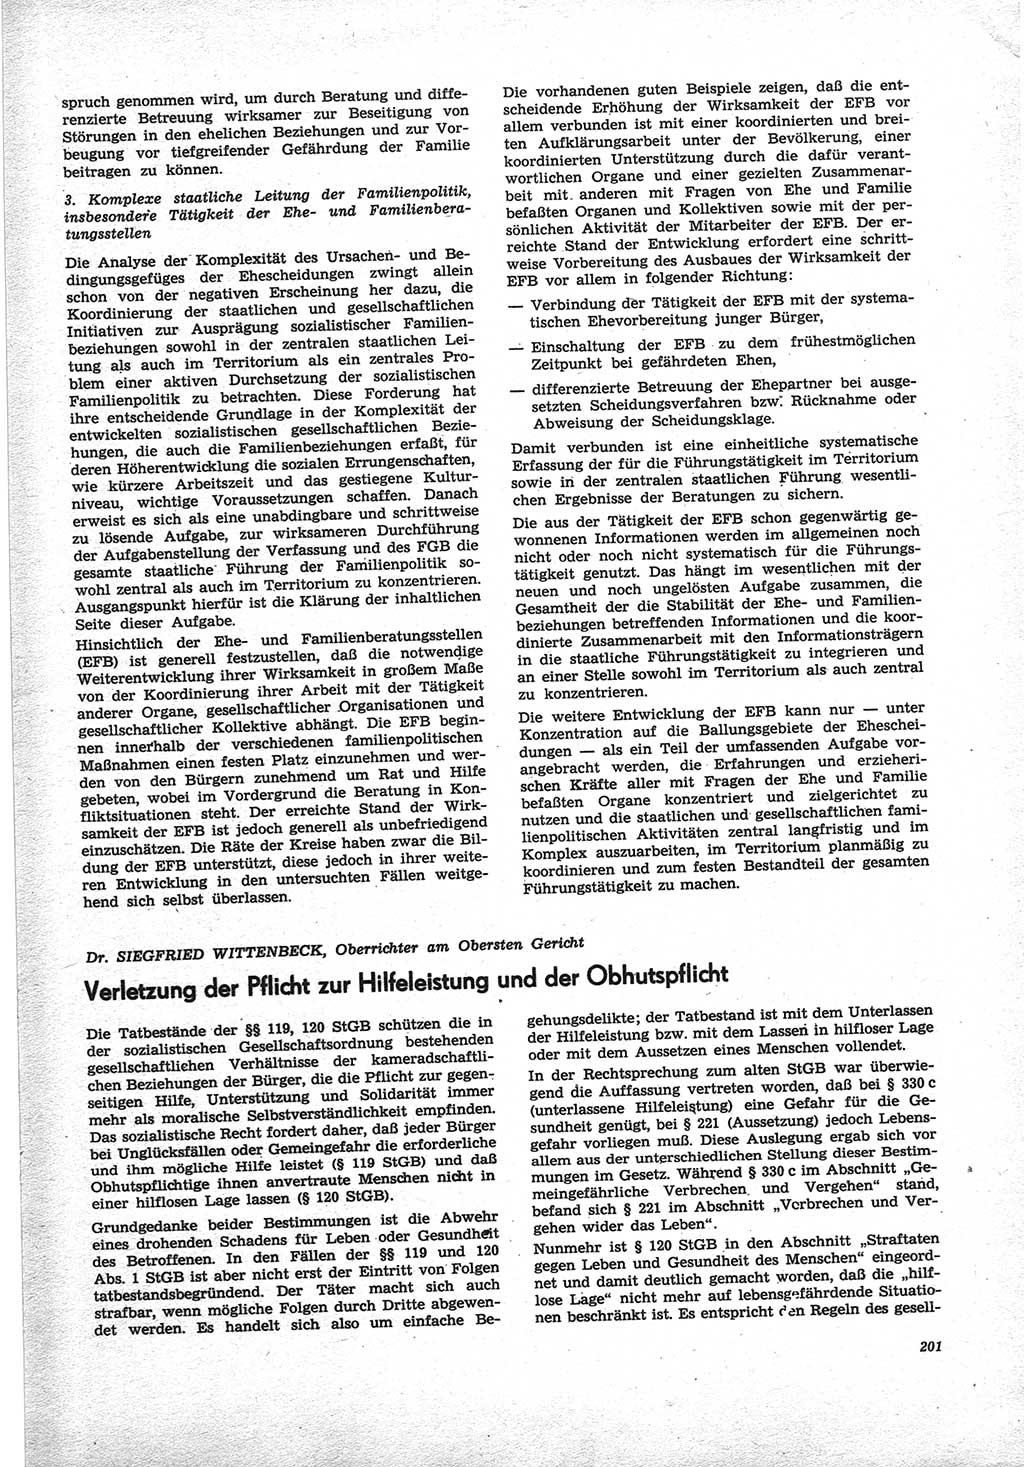 Neue Justiz (NJ), Zeitschrift für Recht und Rechtswissenschaft [Deutsche Demokratische Republik (DDR)], 25. Jahrgang 1971, Seite 201 (NJ DDR 1971, S. 201)